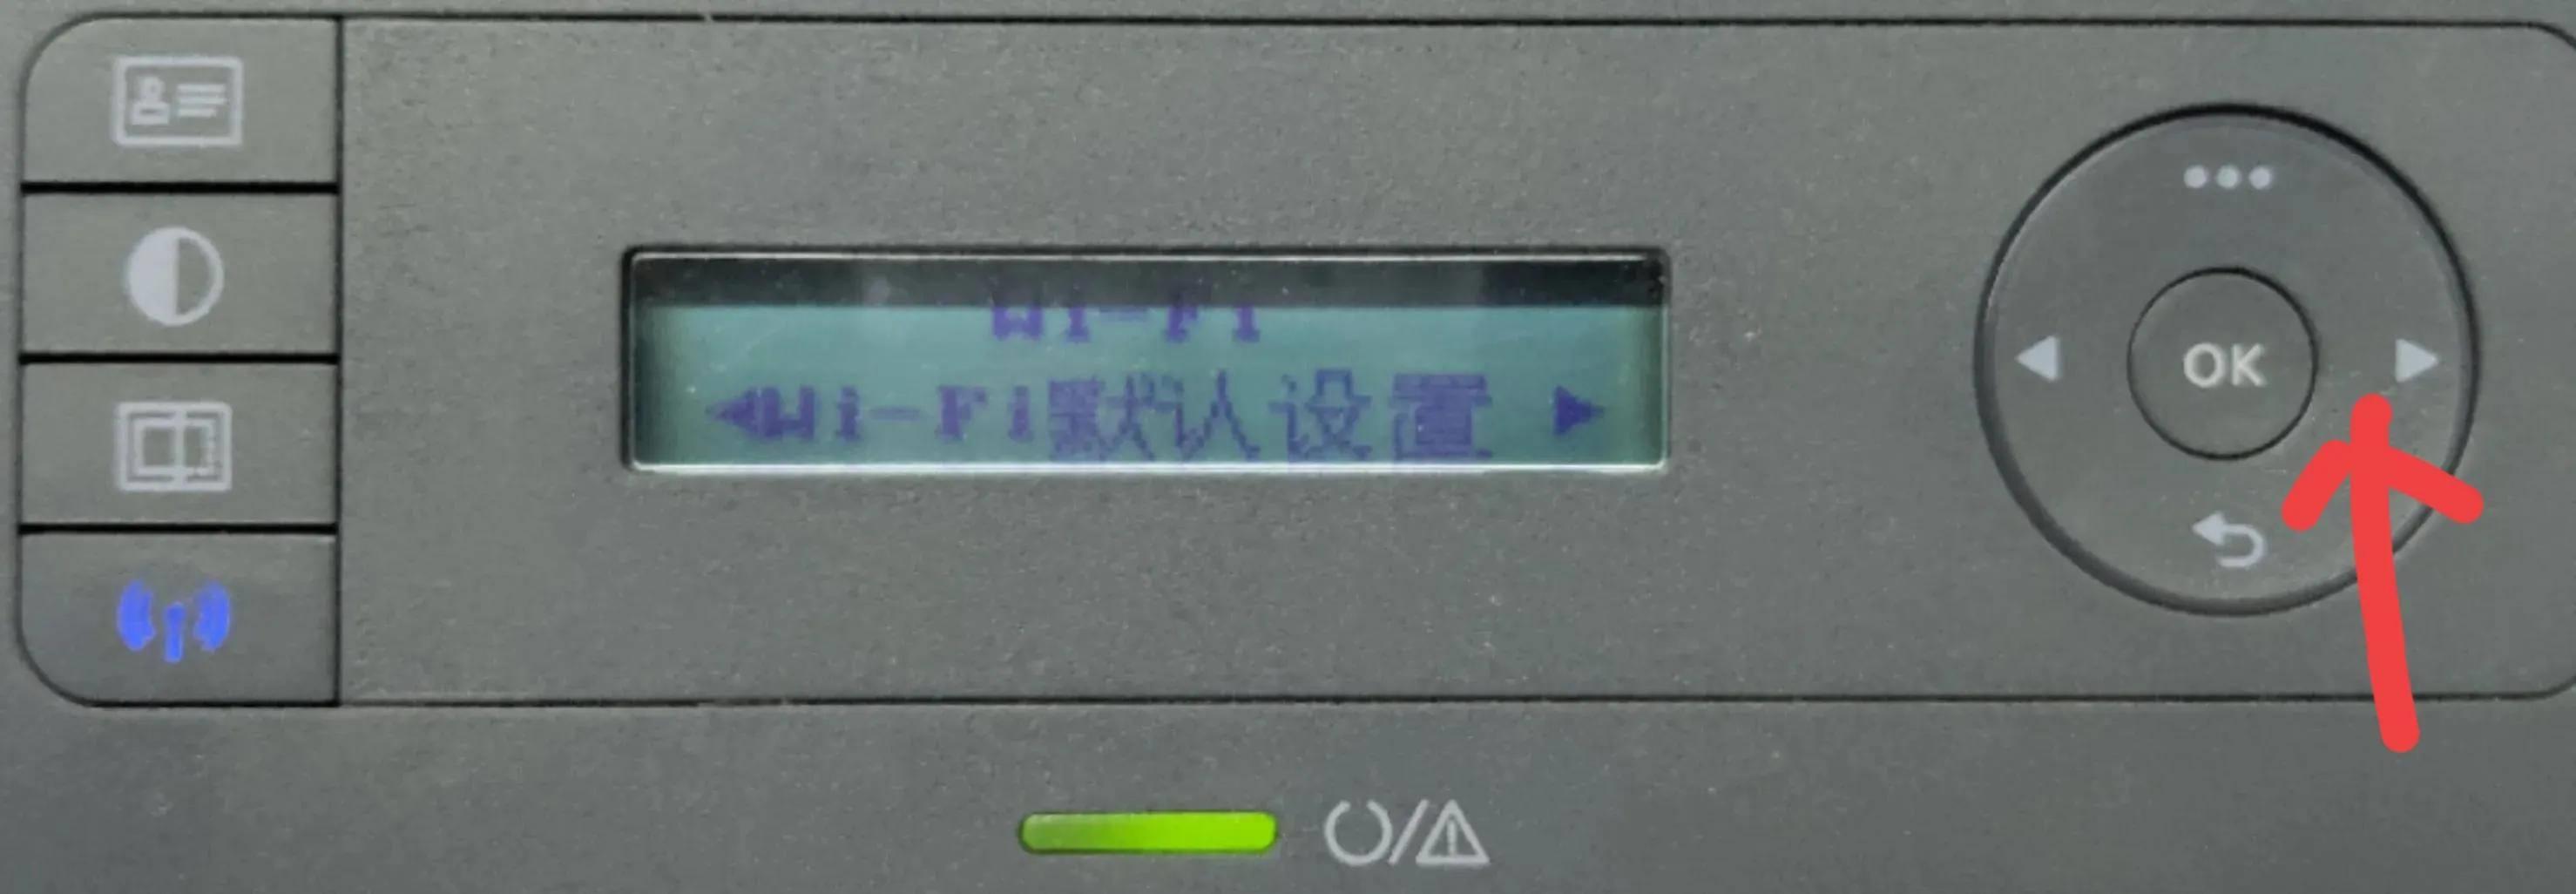 惠普打印机打印步骤(惠普打印机136w如何连接无线打印)